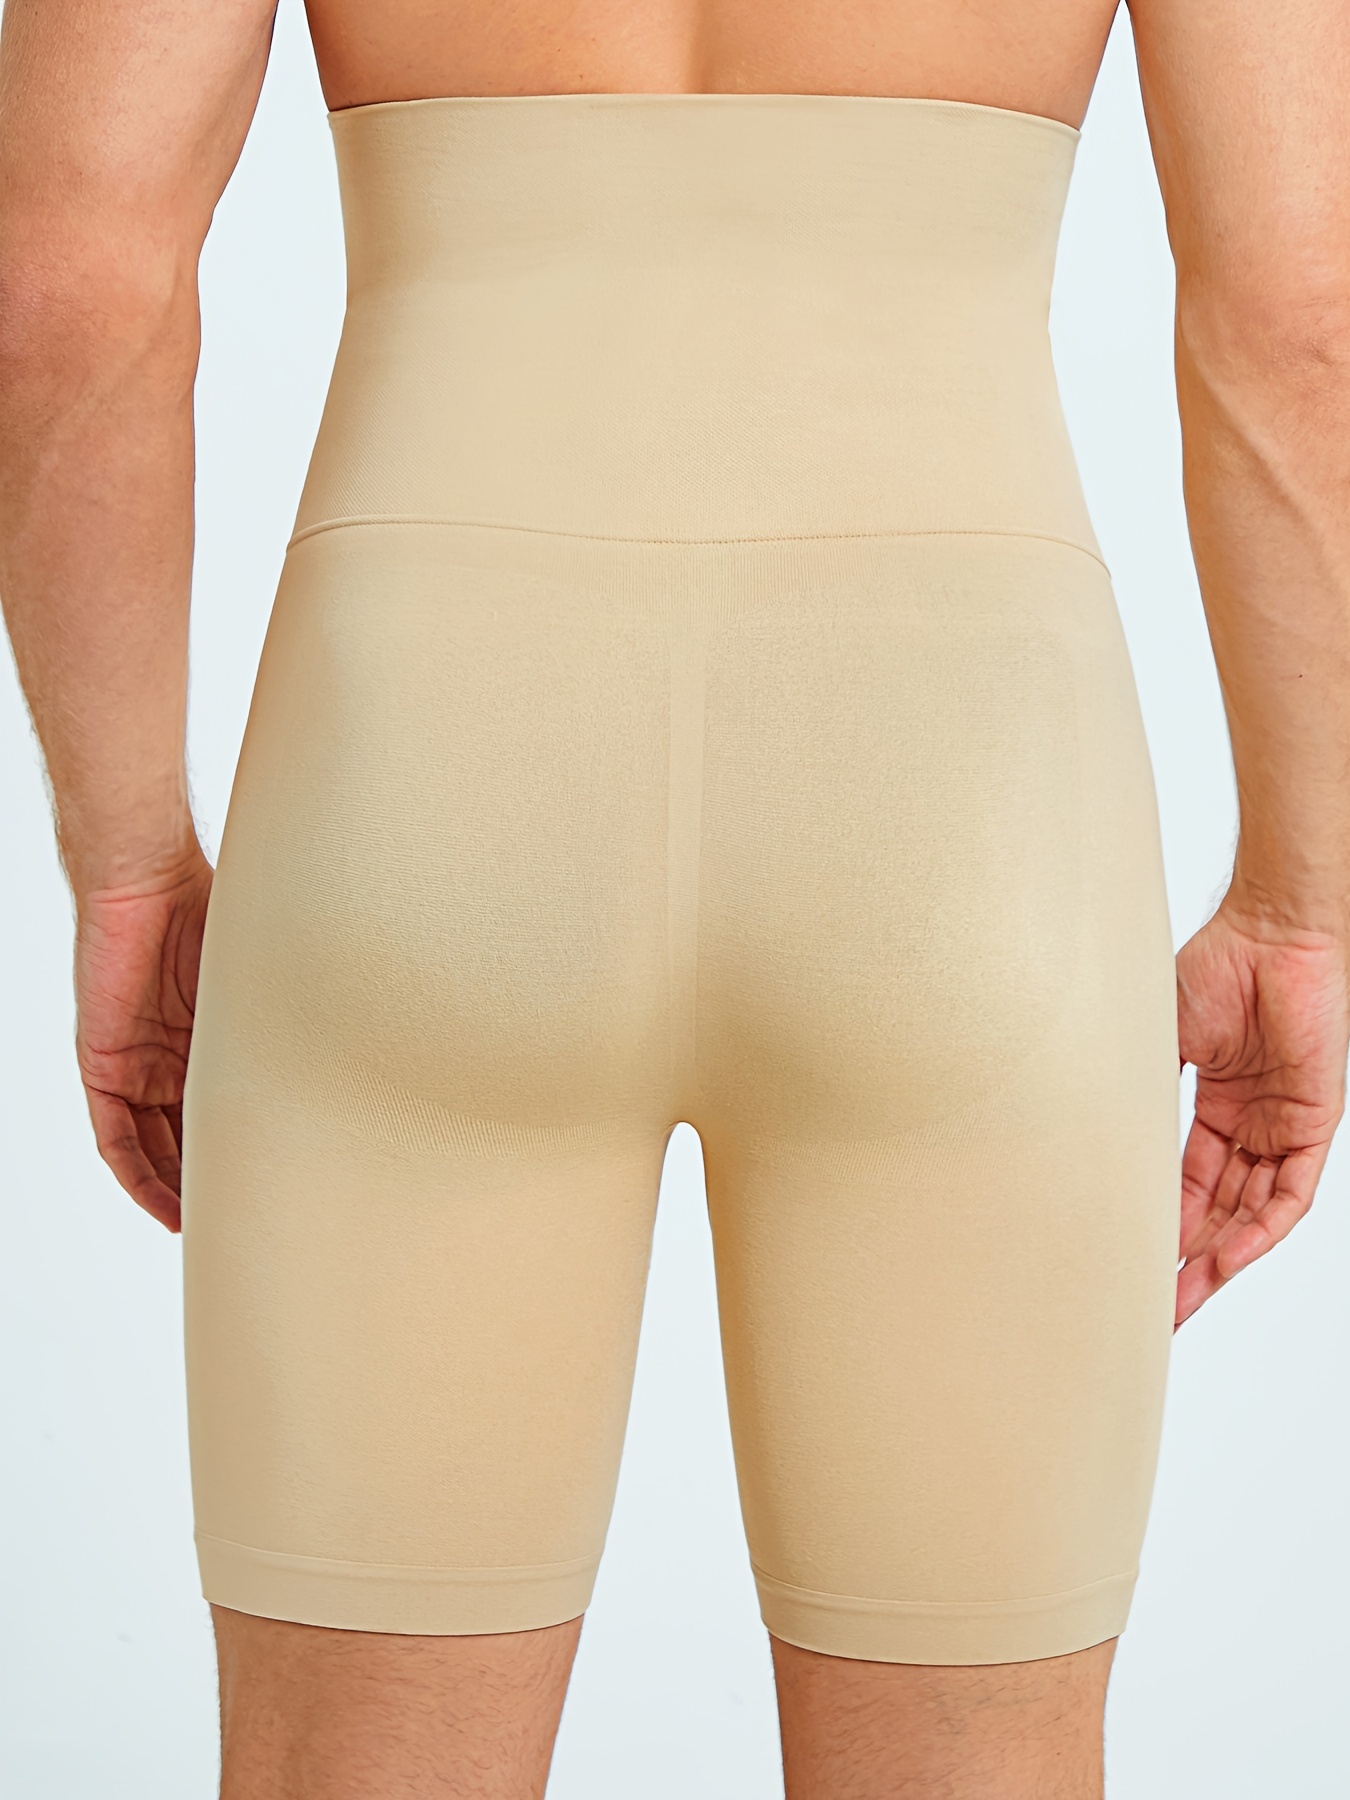 Body Shaper Elastic Slimming Tummy Control Shapewear Underwear